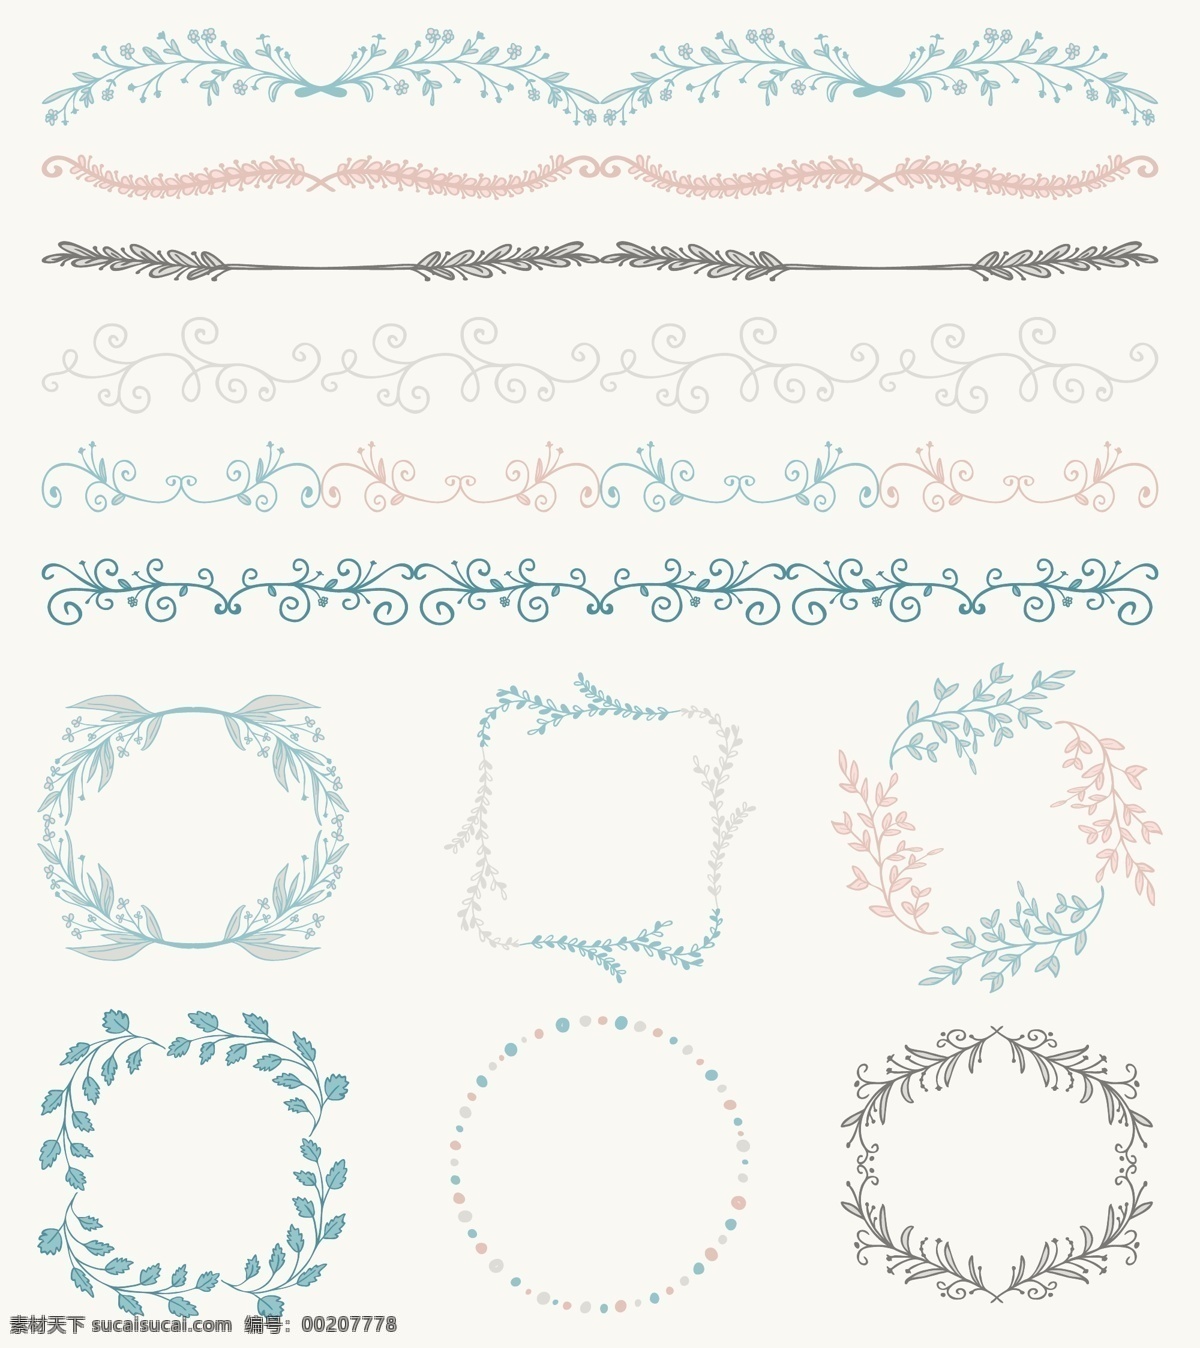 小 清新 橄榄枝 花朵 线条 花环 矢量 分割线 花边 手绘 装饰 矢量素材 平面设计素材